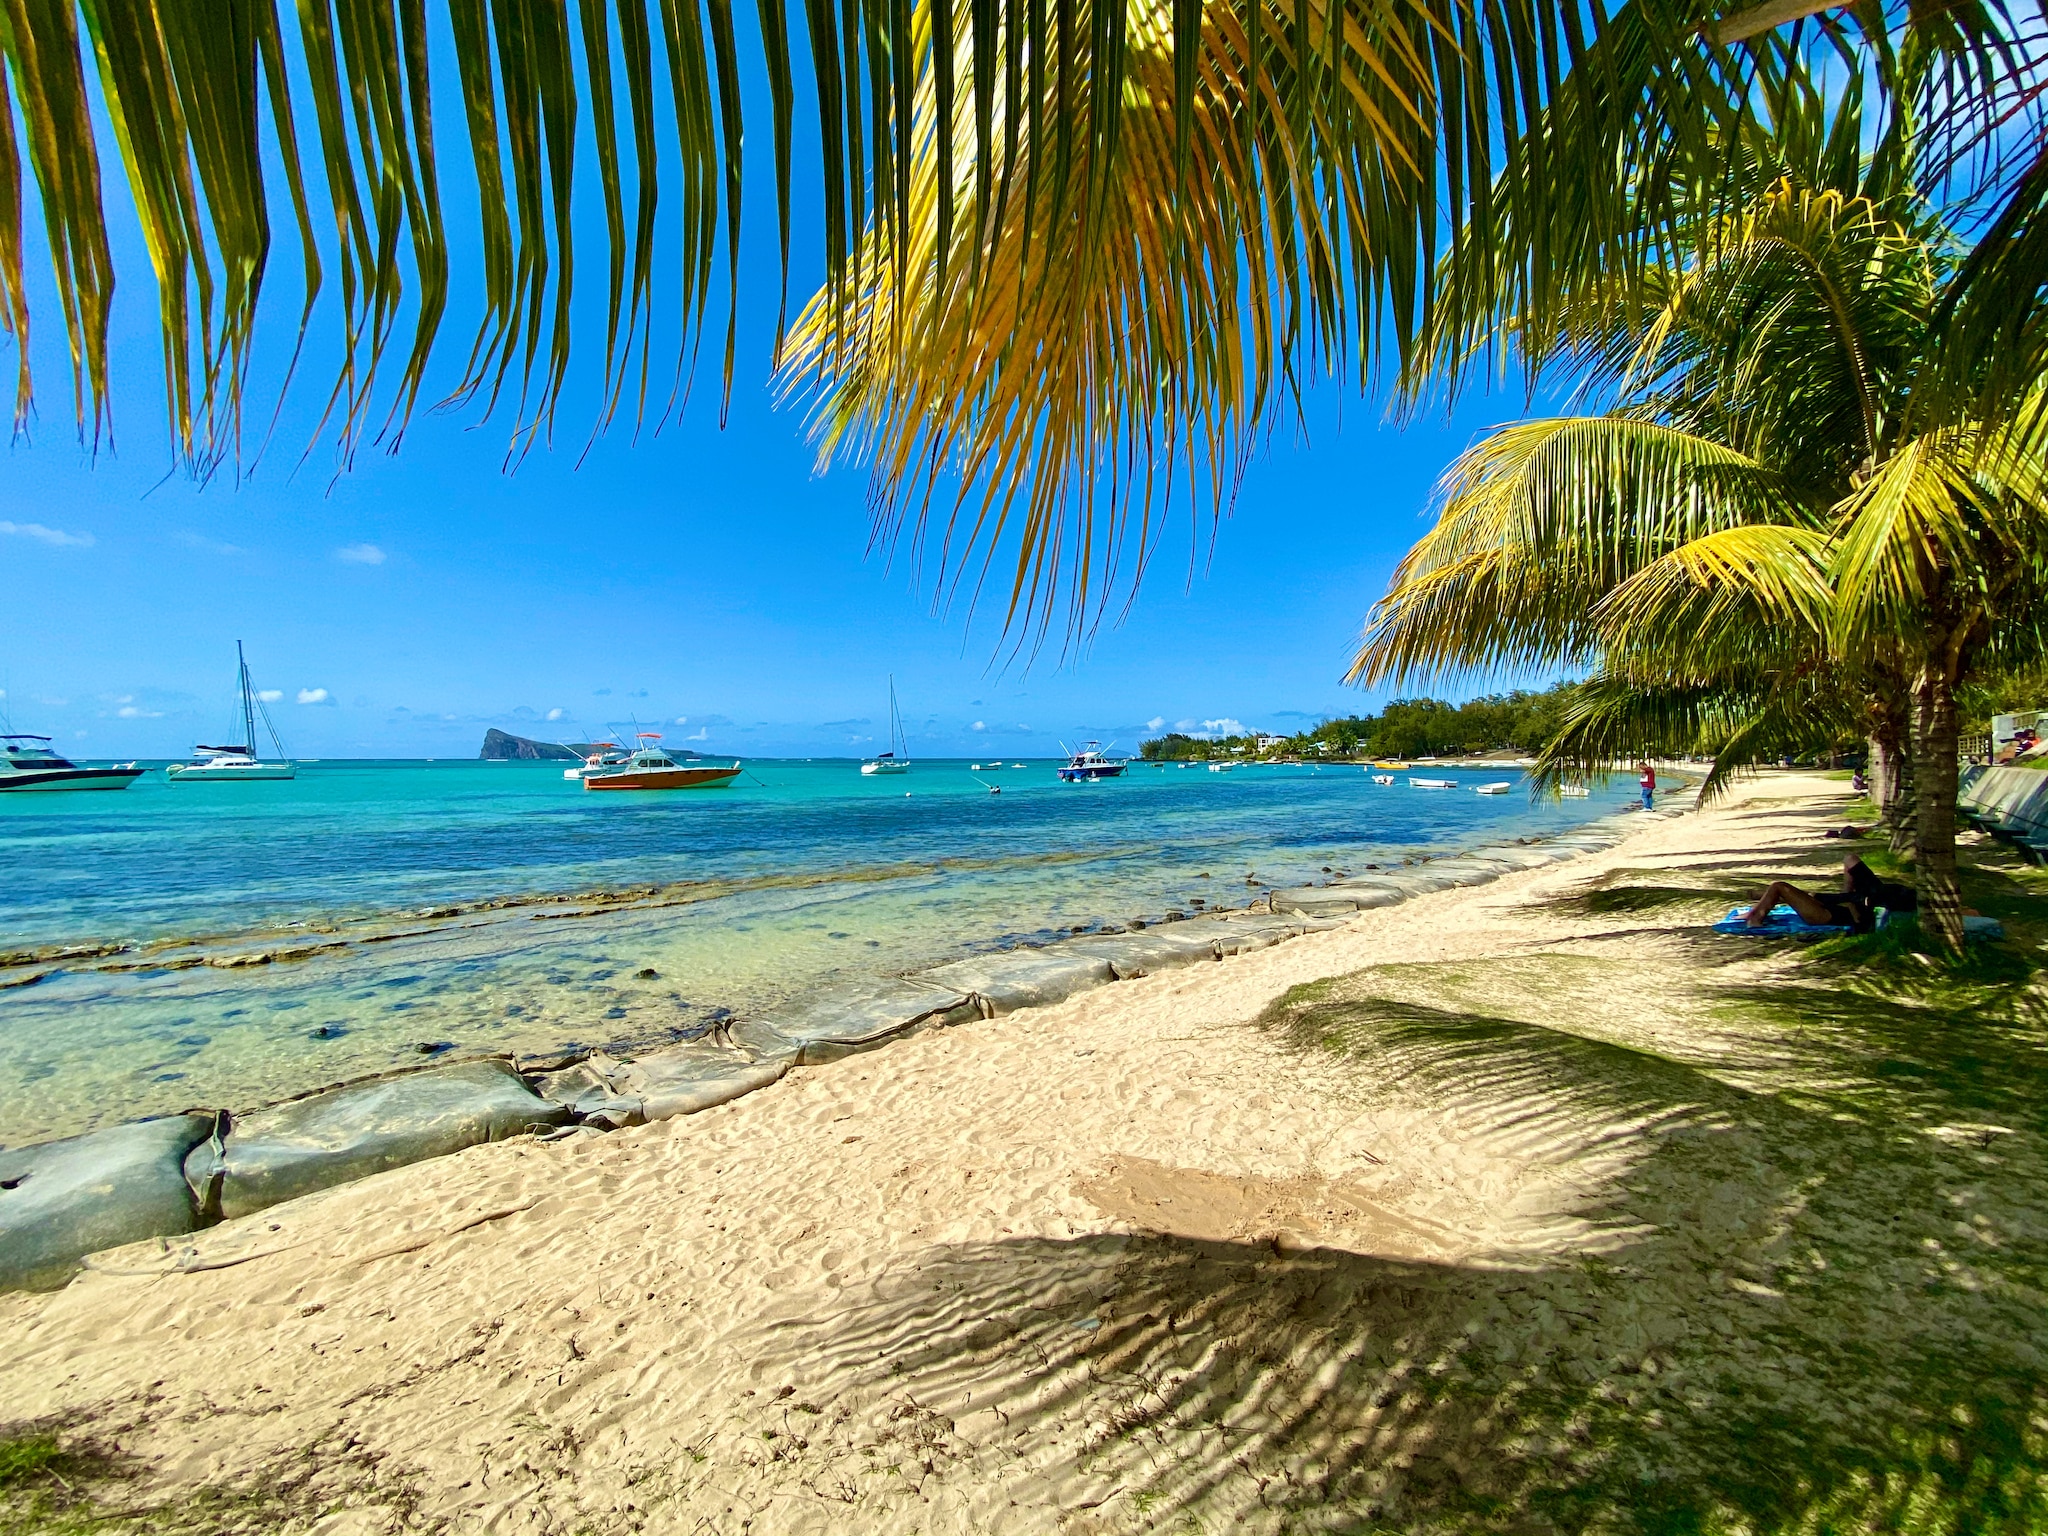 Von Oktober bis Dezember ist es auf Mauritius sonnig, warm und relativ trocken – das ist die beste Reisezeit für Urlauber. © Sascha Tegtmeyer